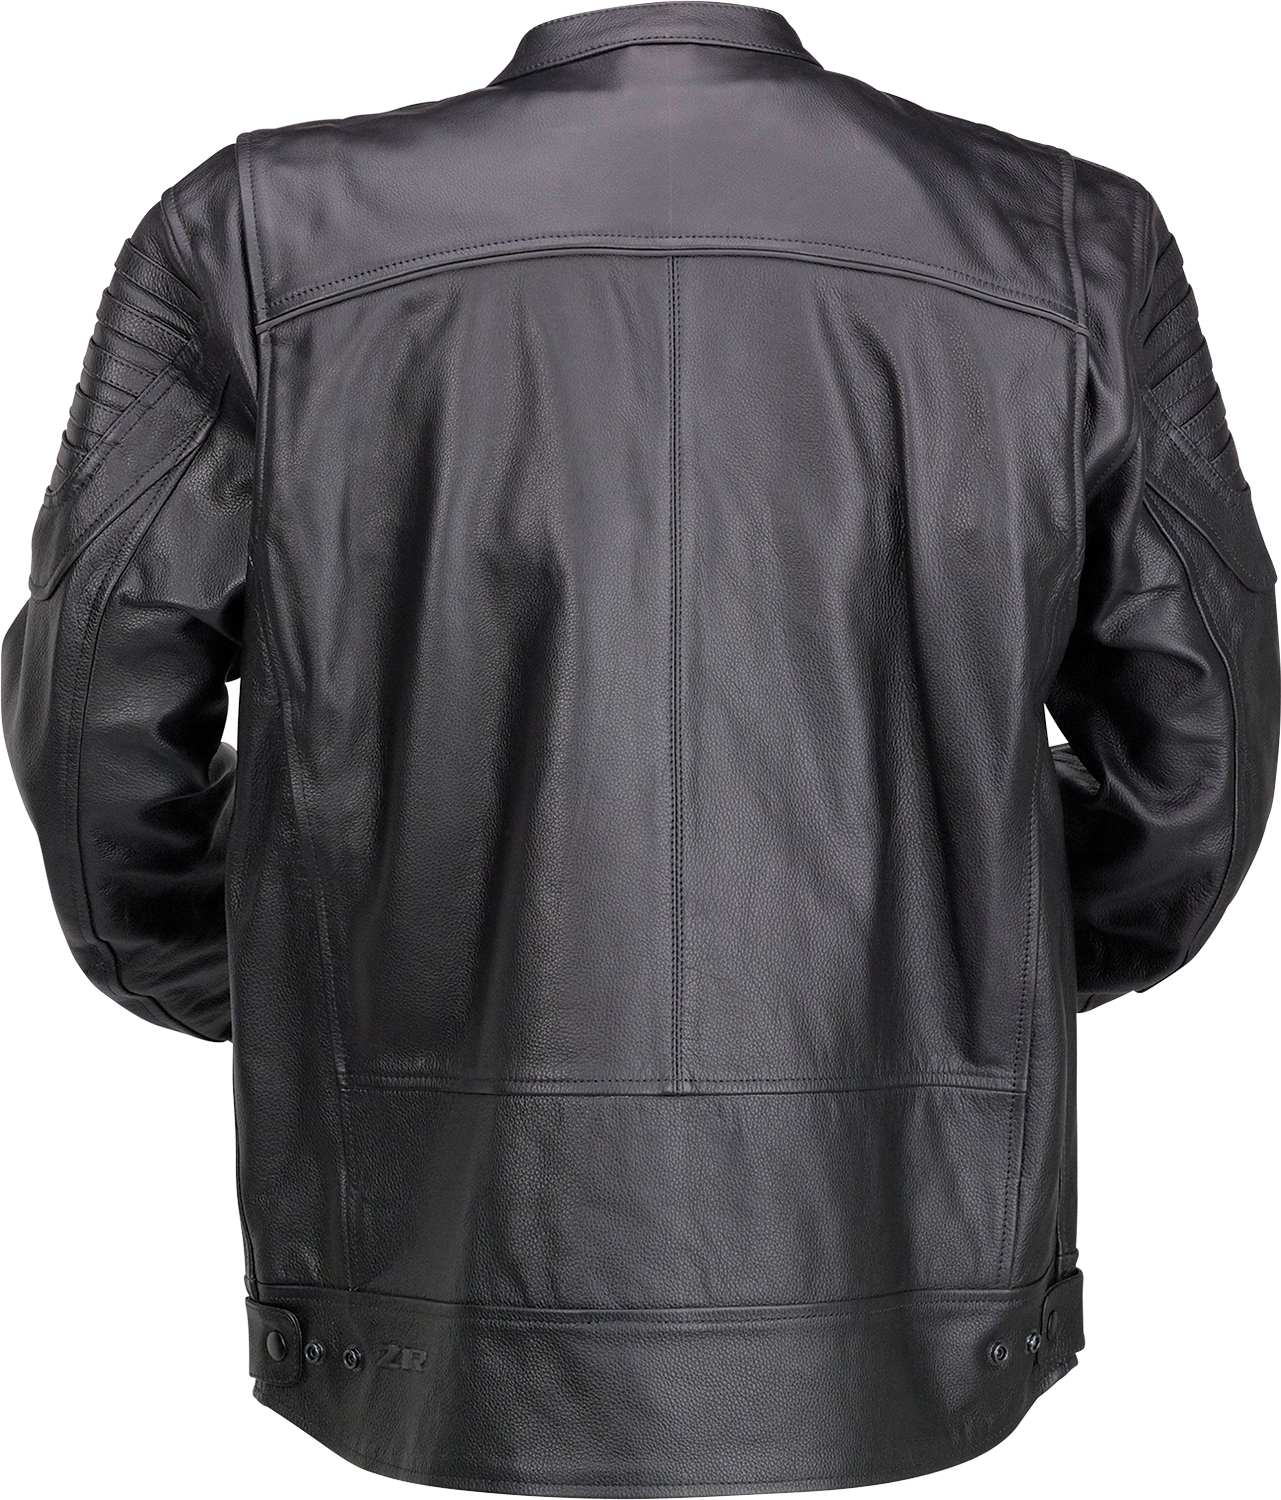 Z1R Widower Leather Jacket - Black - 4XL 2810-3975